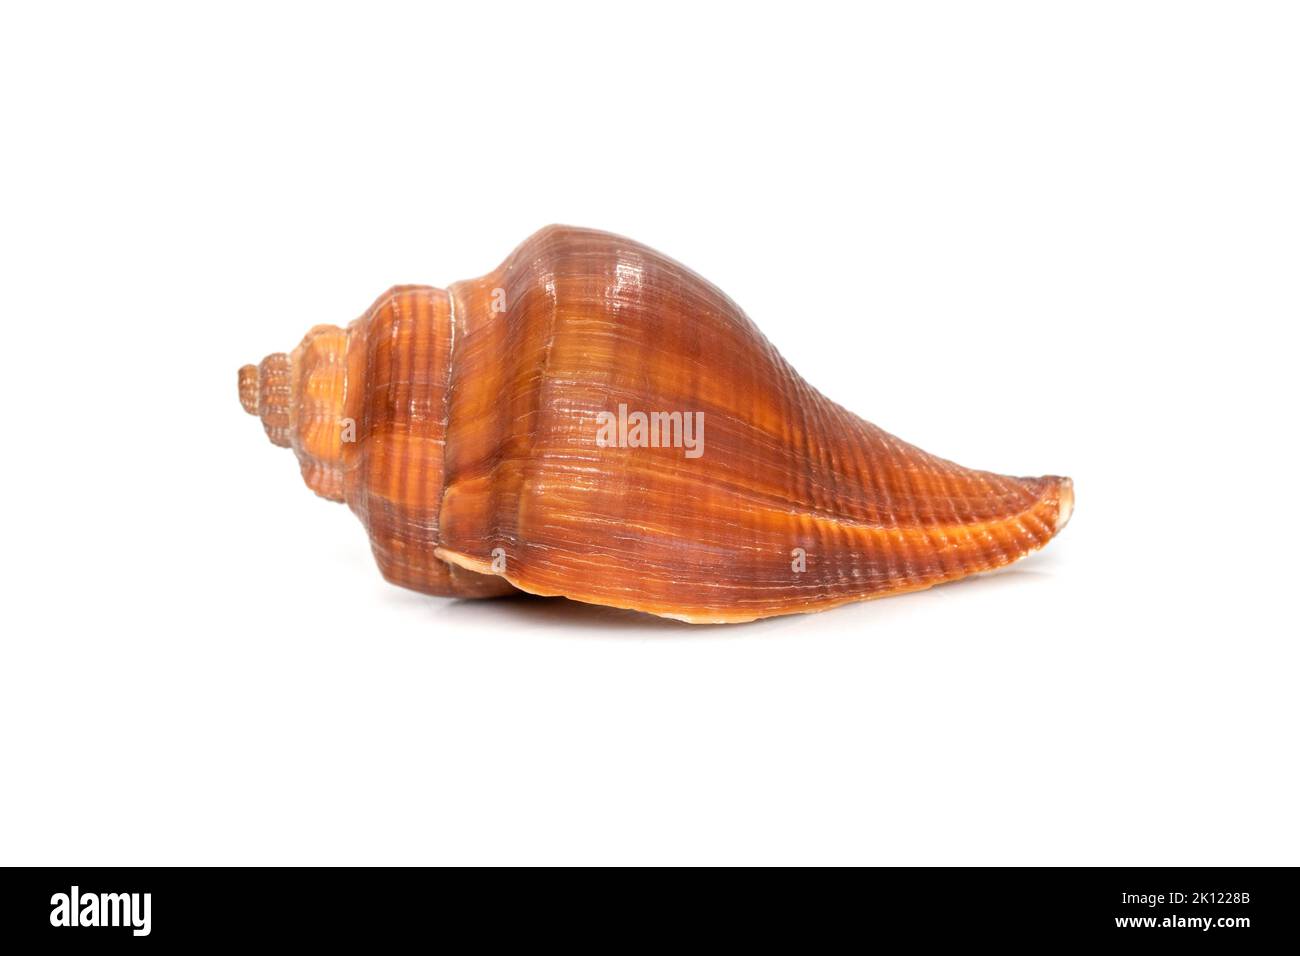 Immagine di pugilina coclidium (spirale melongena) su sfondo bianco. Lumaca del Mar Rosso. Animali sottomarini. Conchiglie di mare. Foto Stock